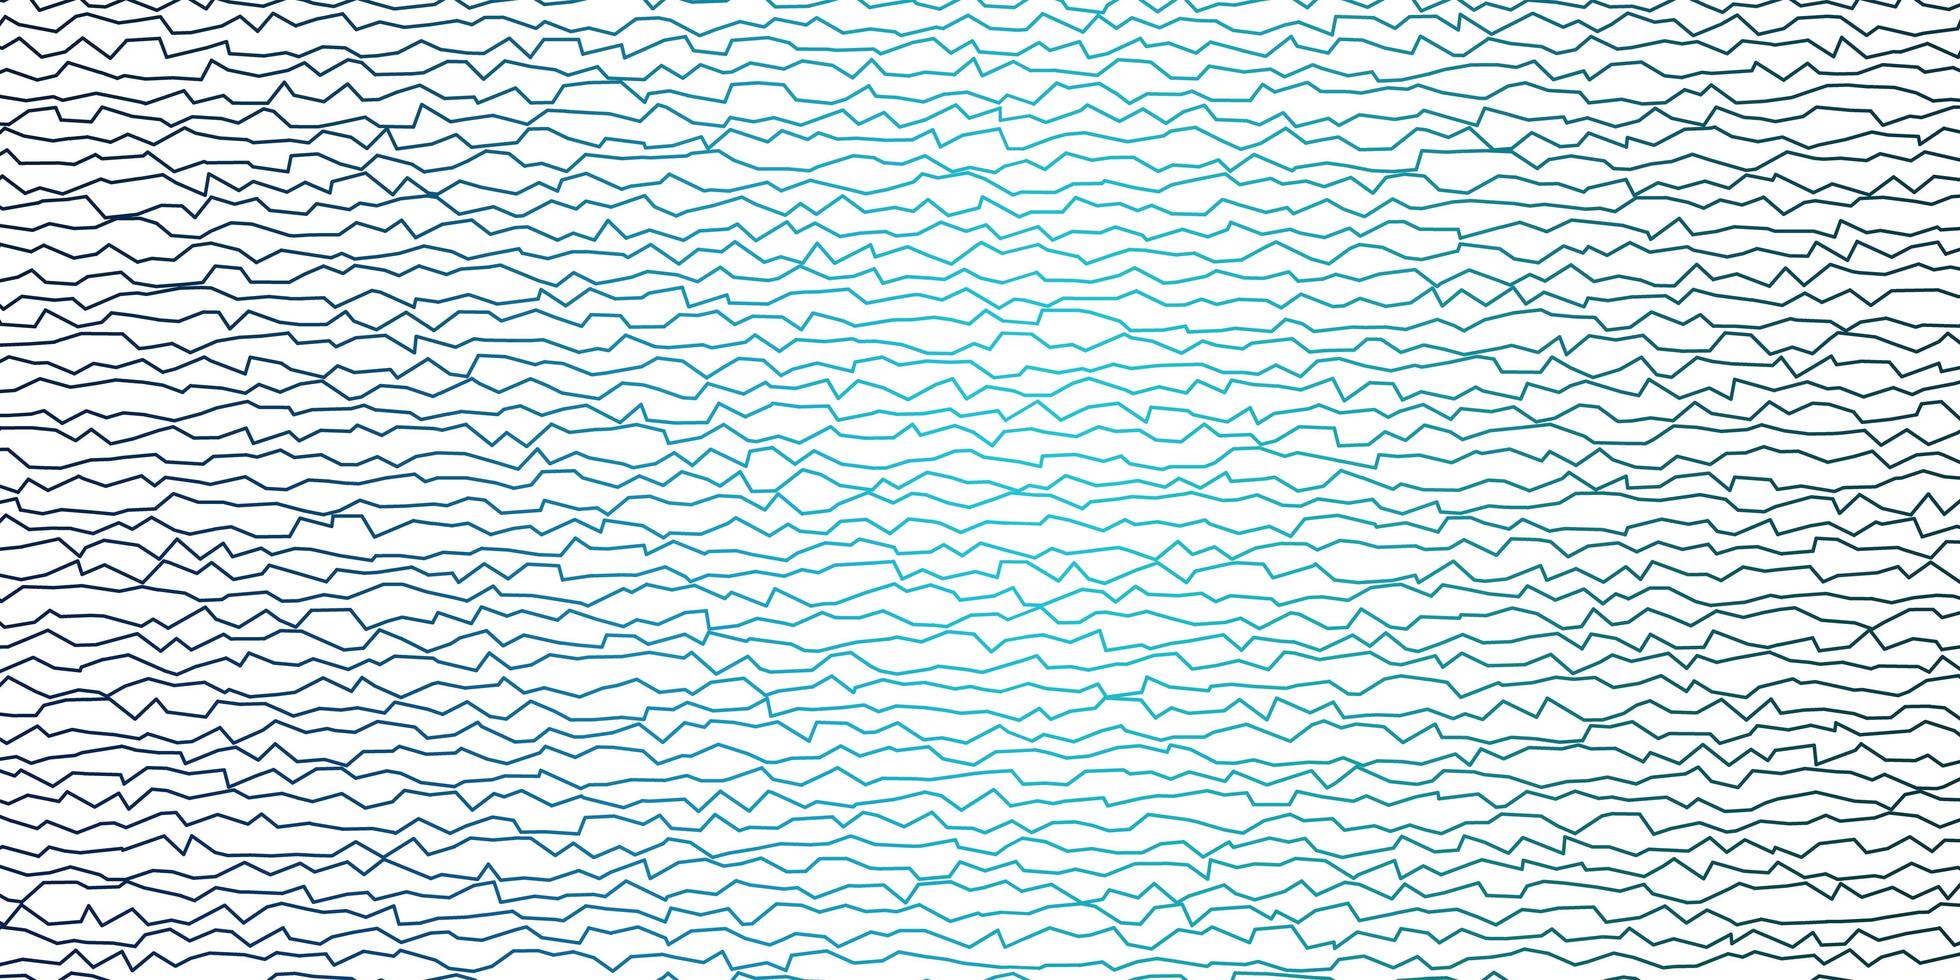 patrón de vector azul oscuro con líneas curvas.